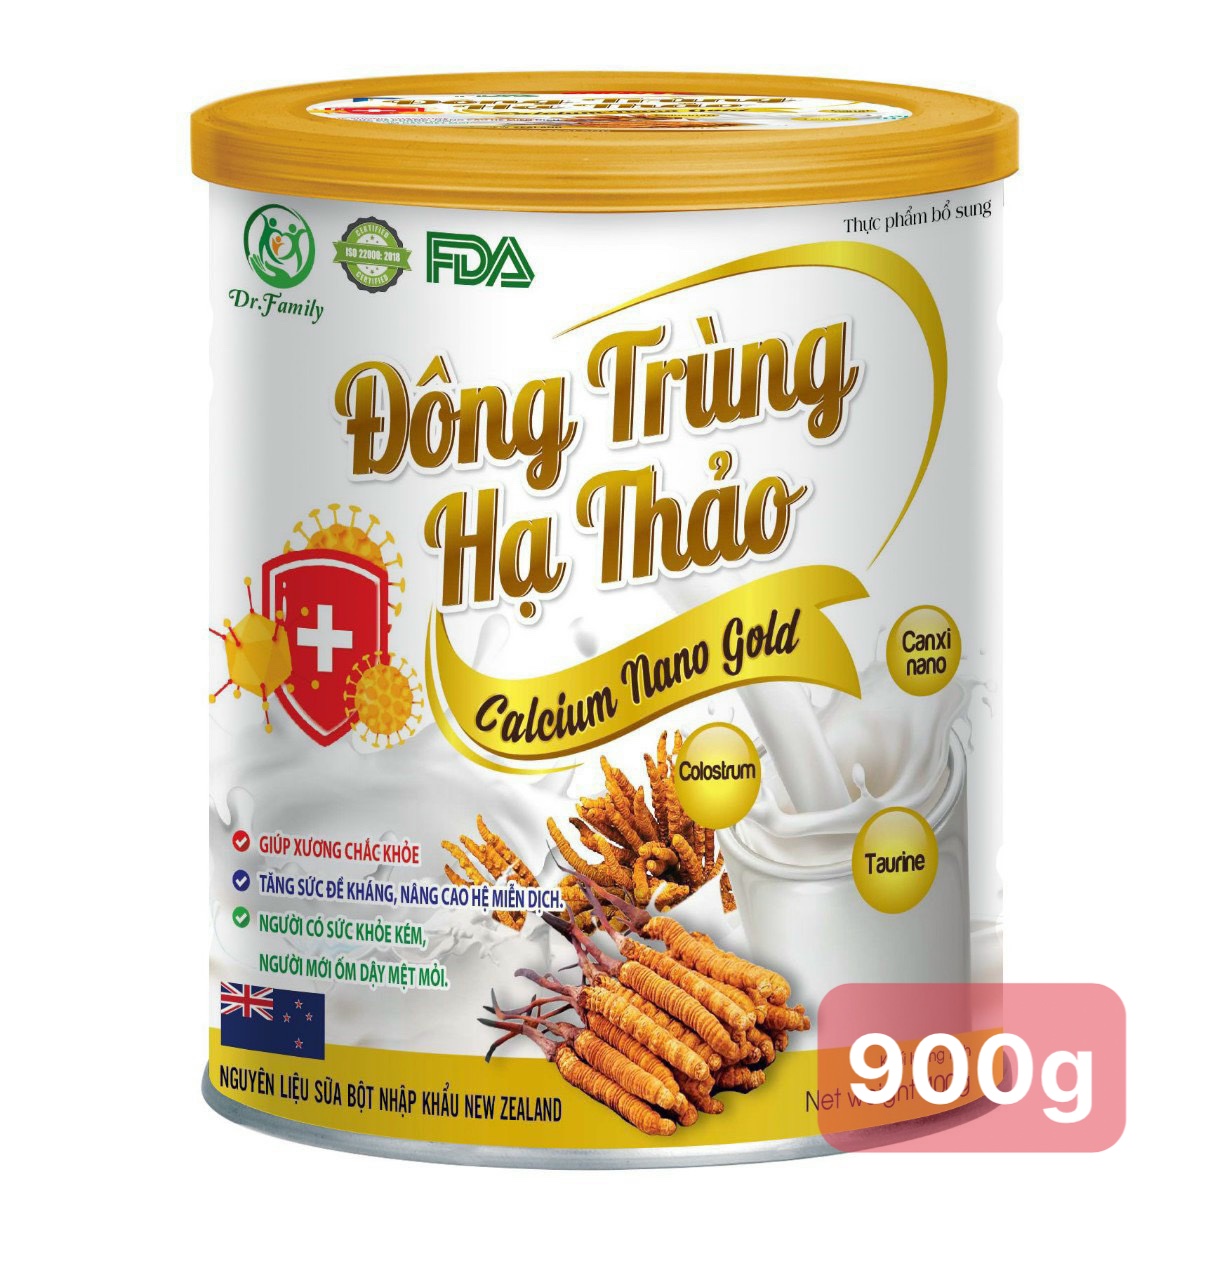 (Hộp 900g) Sữa bột Đông trùng hạ thảo Canxi Nano Gold giúp tăng sức khỏe, sức đề kháng, ngăn ngừa loãng xương